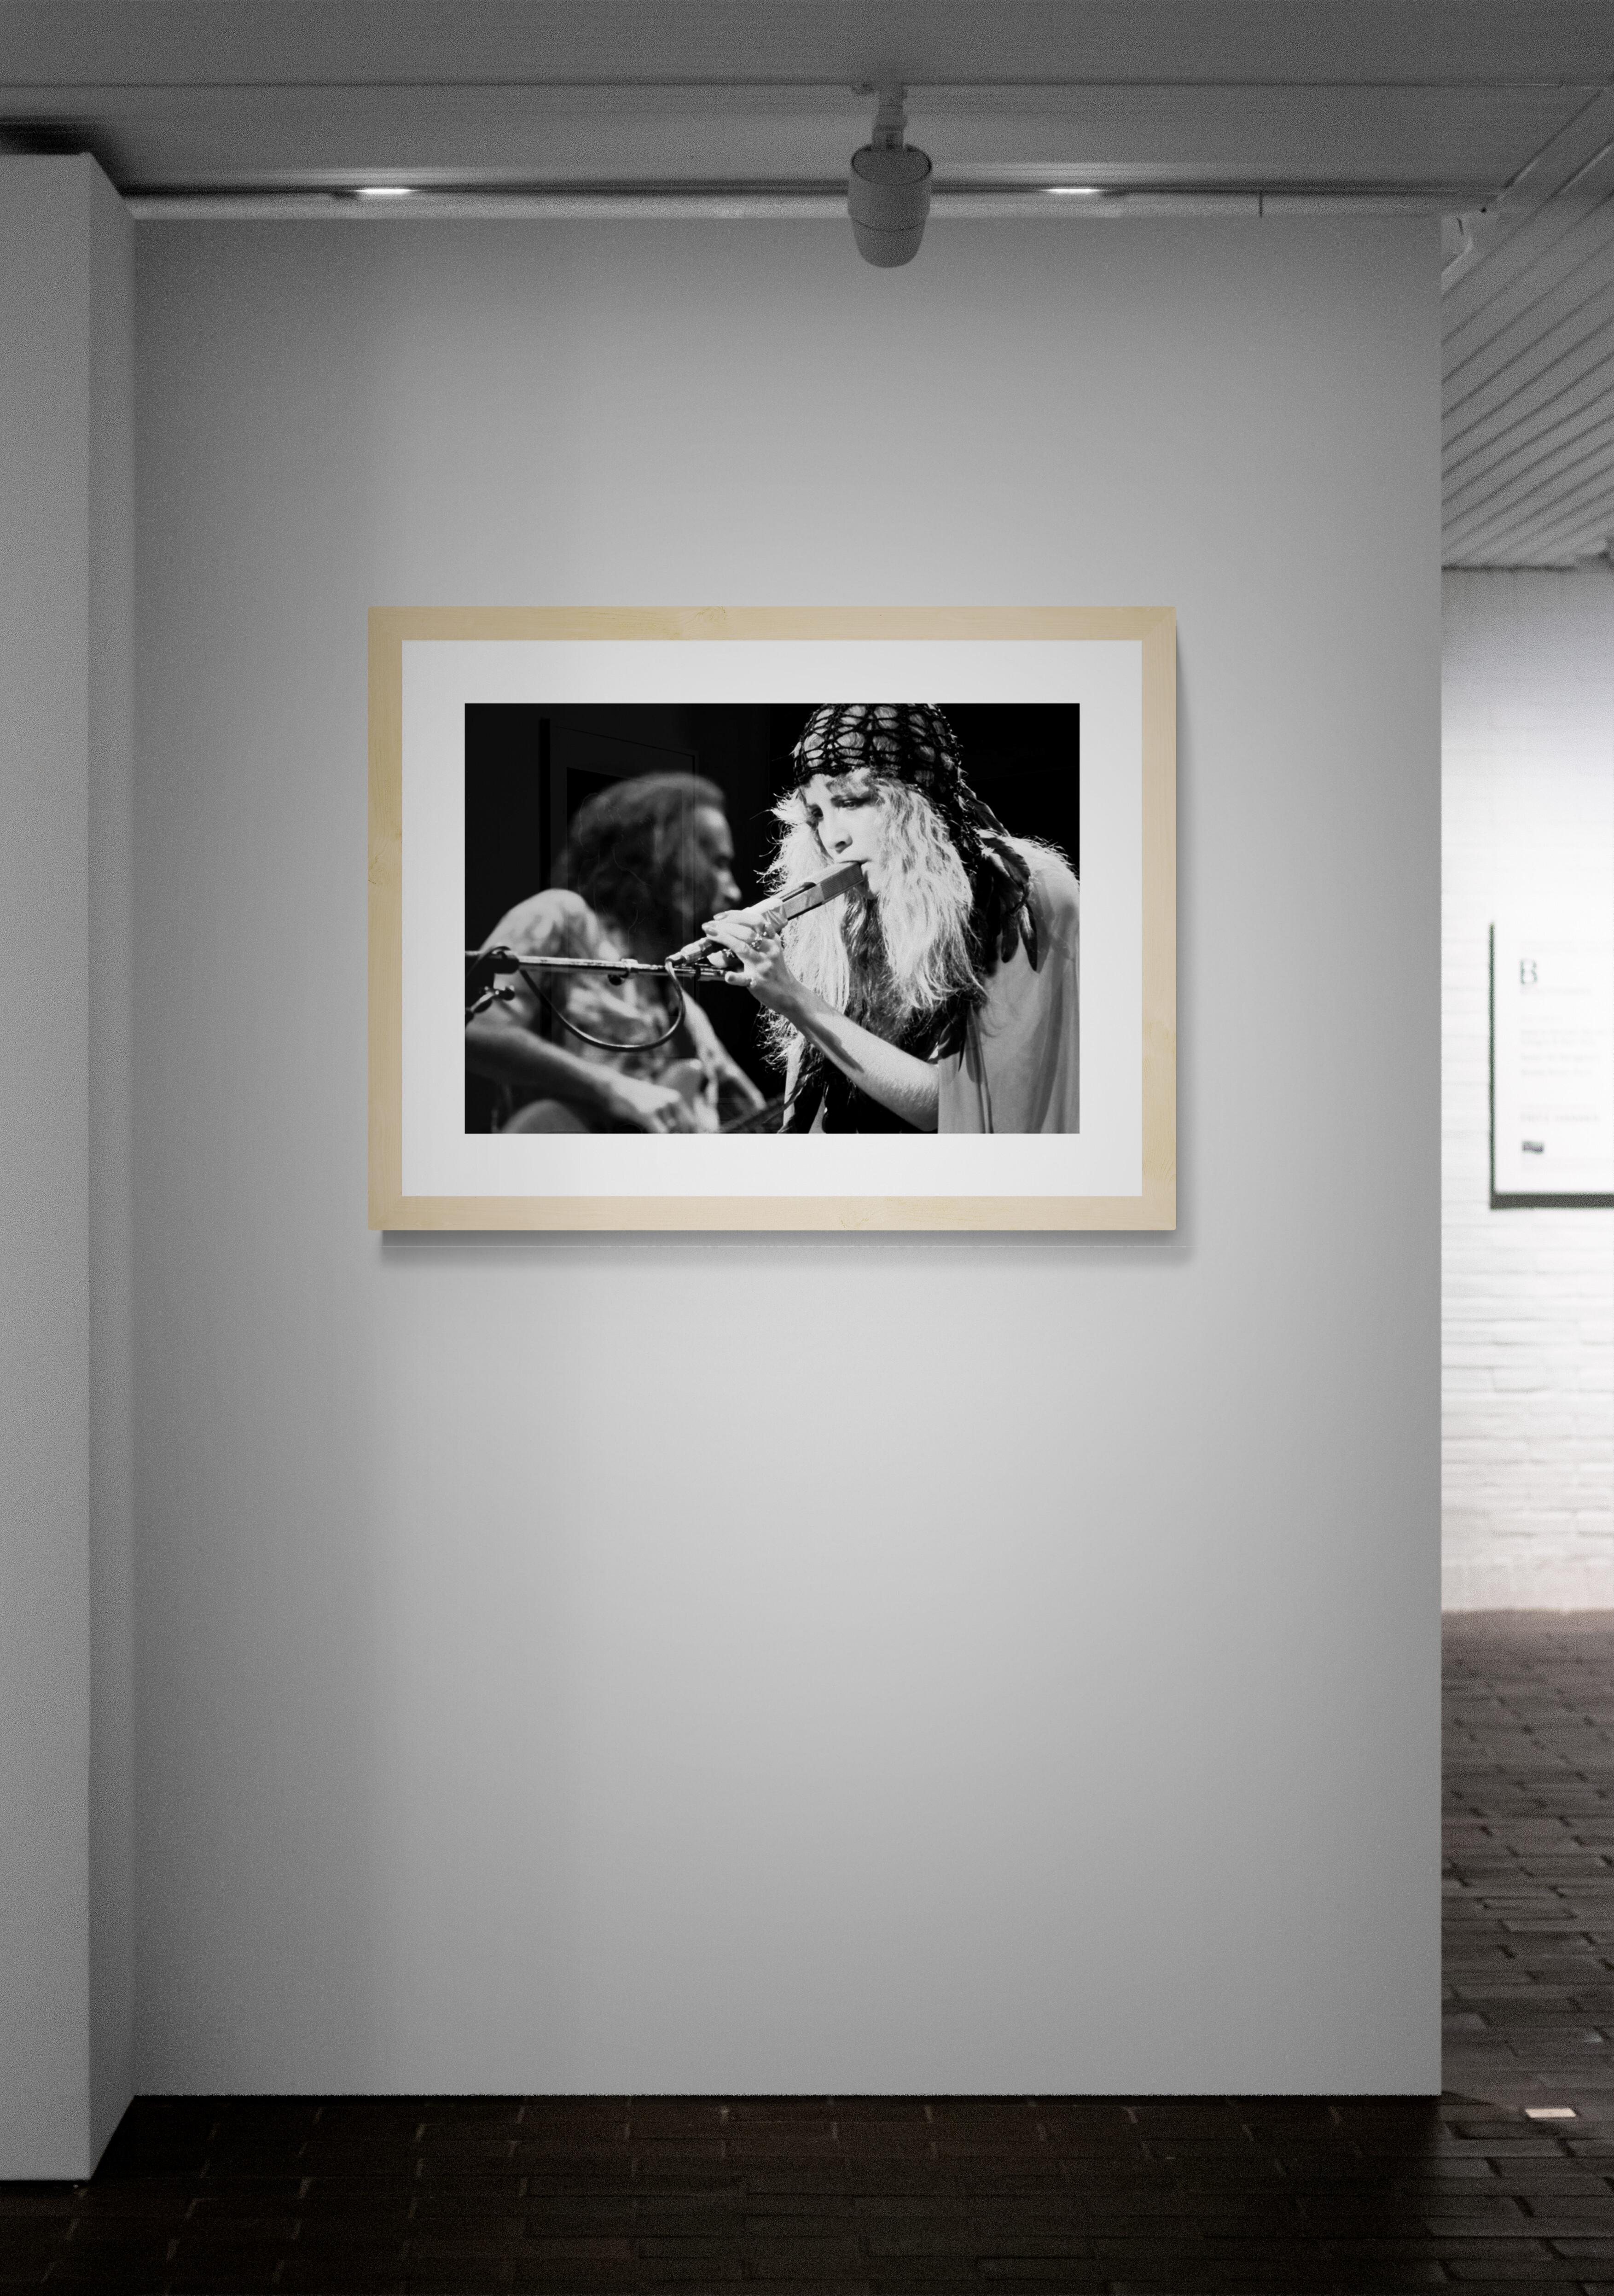 Titel: Stevie Nicks #7 
Künstler: Richard E. Aaron
Nachlass-Edition: Handnummeriert mit Nachlassstempel im Rand, Signaturstempel auf der Rückseite, Pigmentdruck auf Hahnemühle Photo Rag Pearl, 100% Baumwollpapier, Kunstdruckpapier. Autorisierte